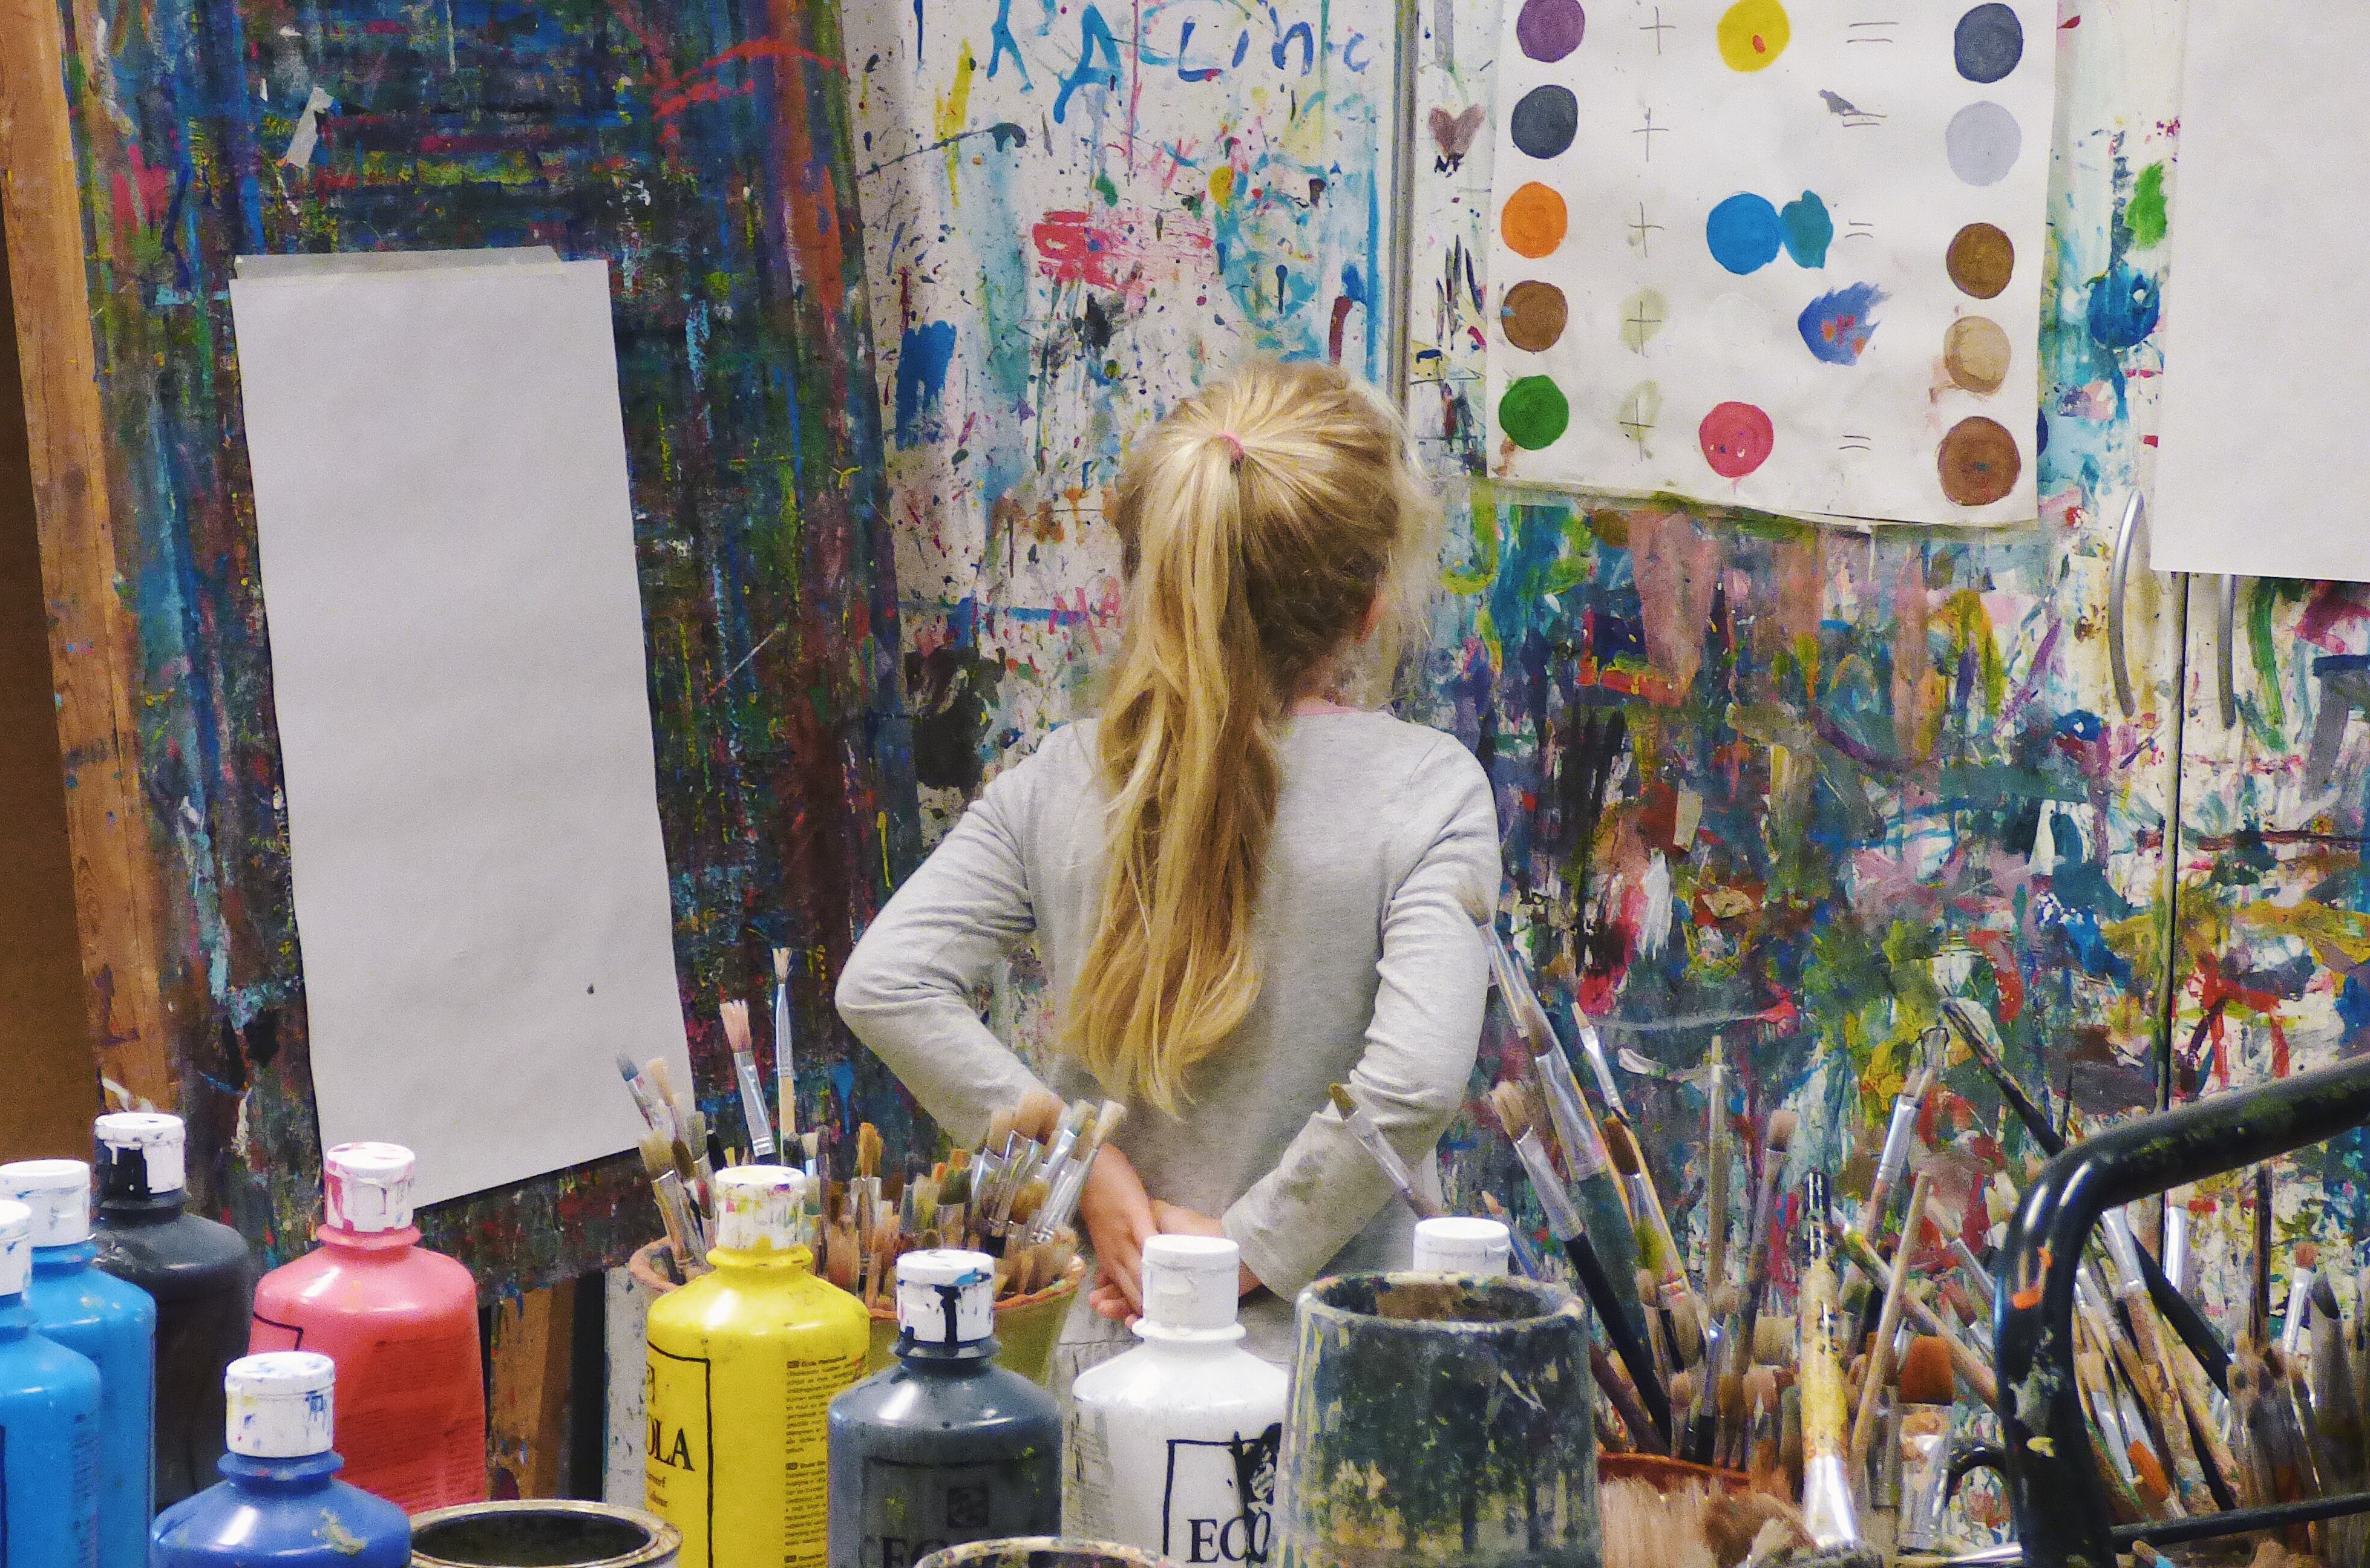 Kind im Kunstatelier mit verschiedenen Farben und Bilderwänden (Symbolfoto)